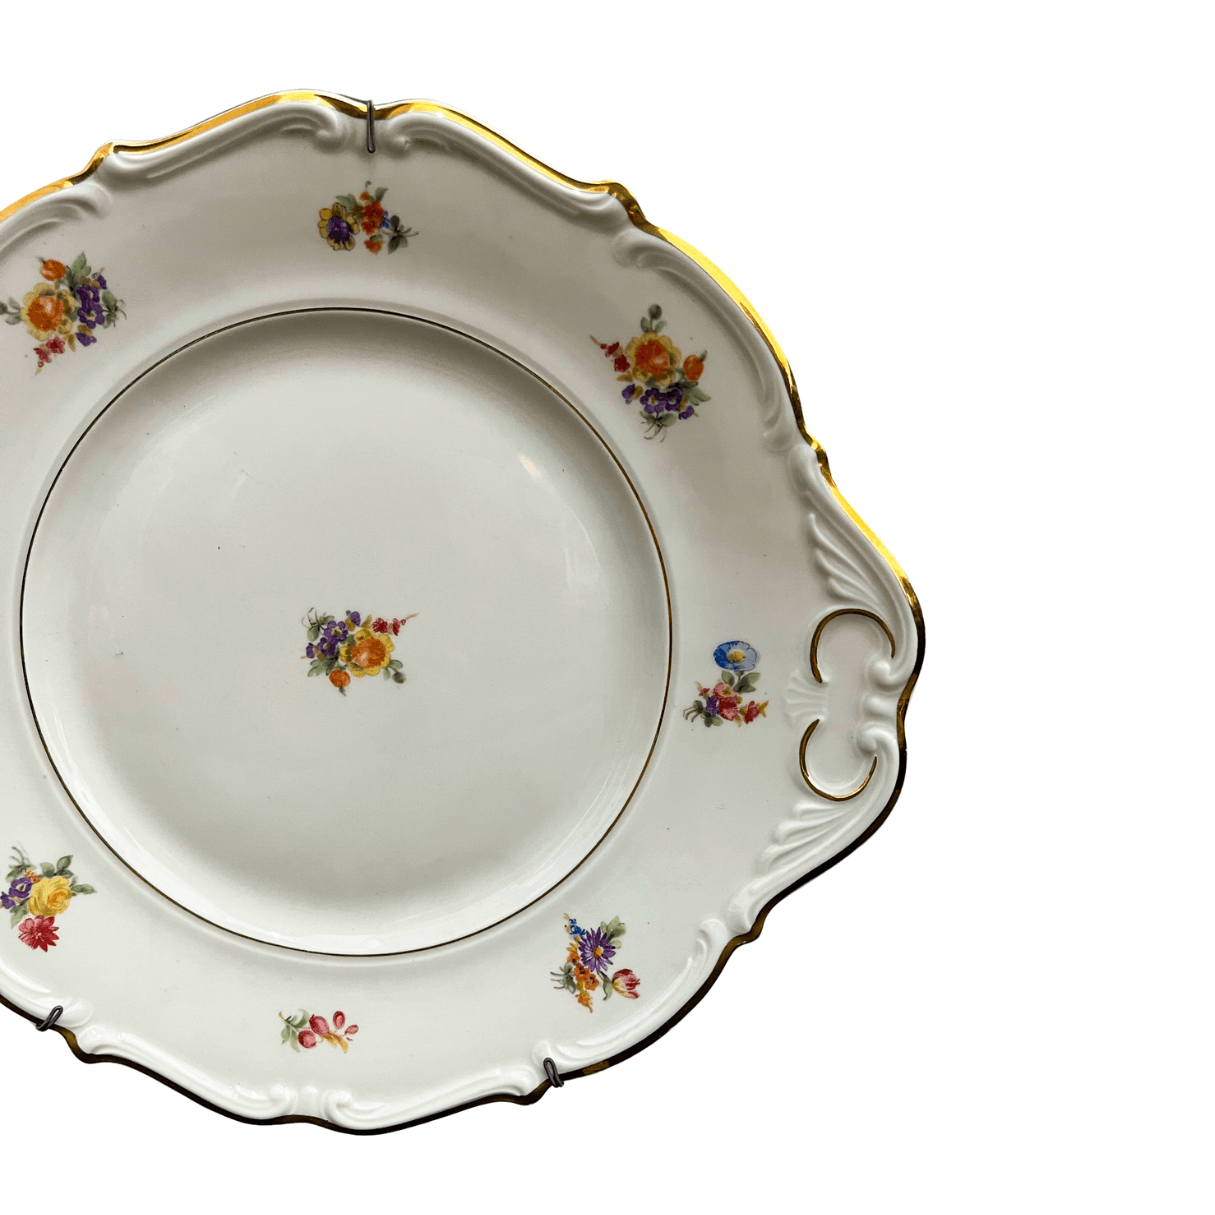 Prato Decorativo em Porcelana com Detalhe Floral